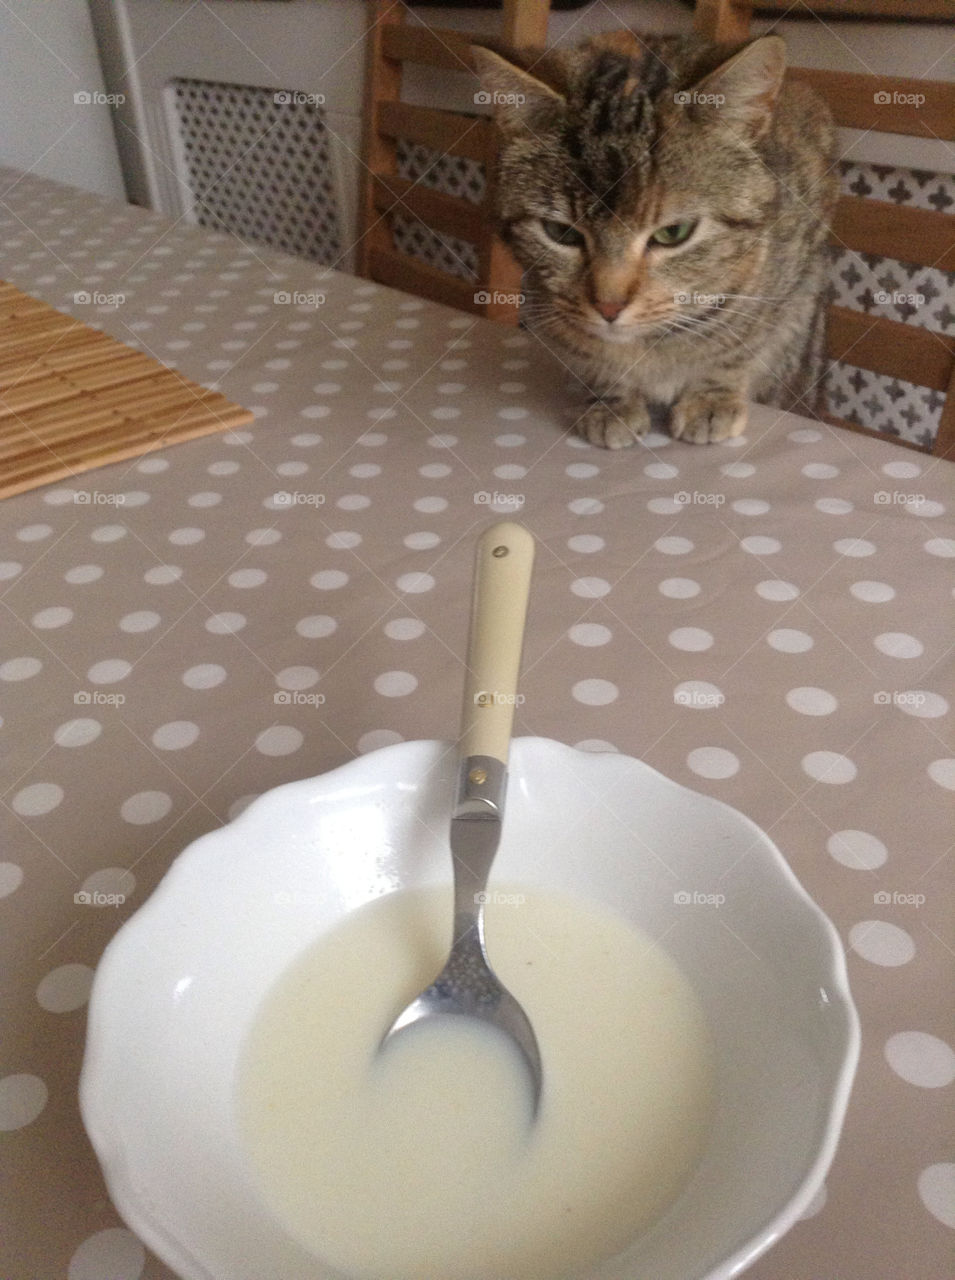 Kitty wants milk